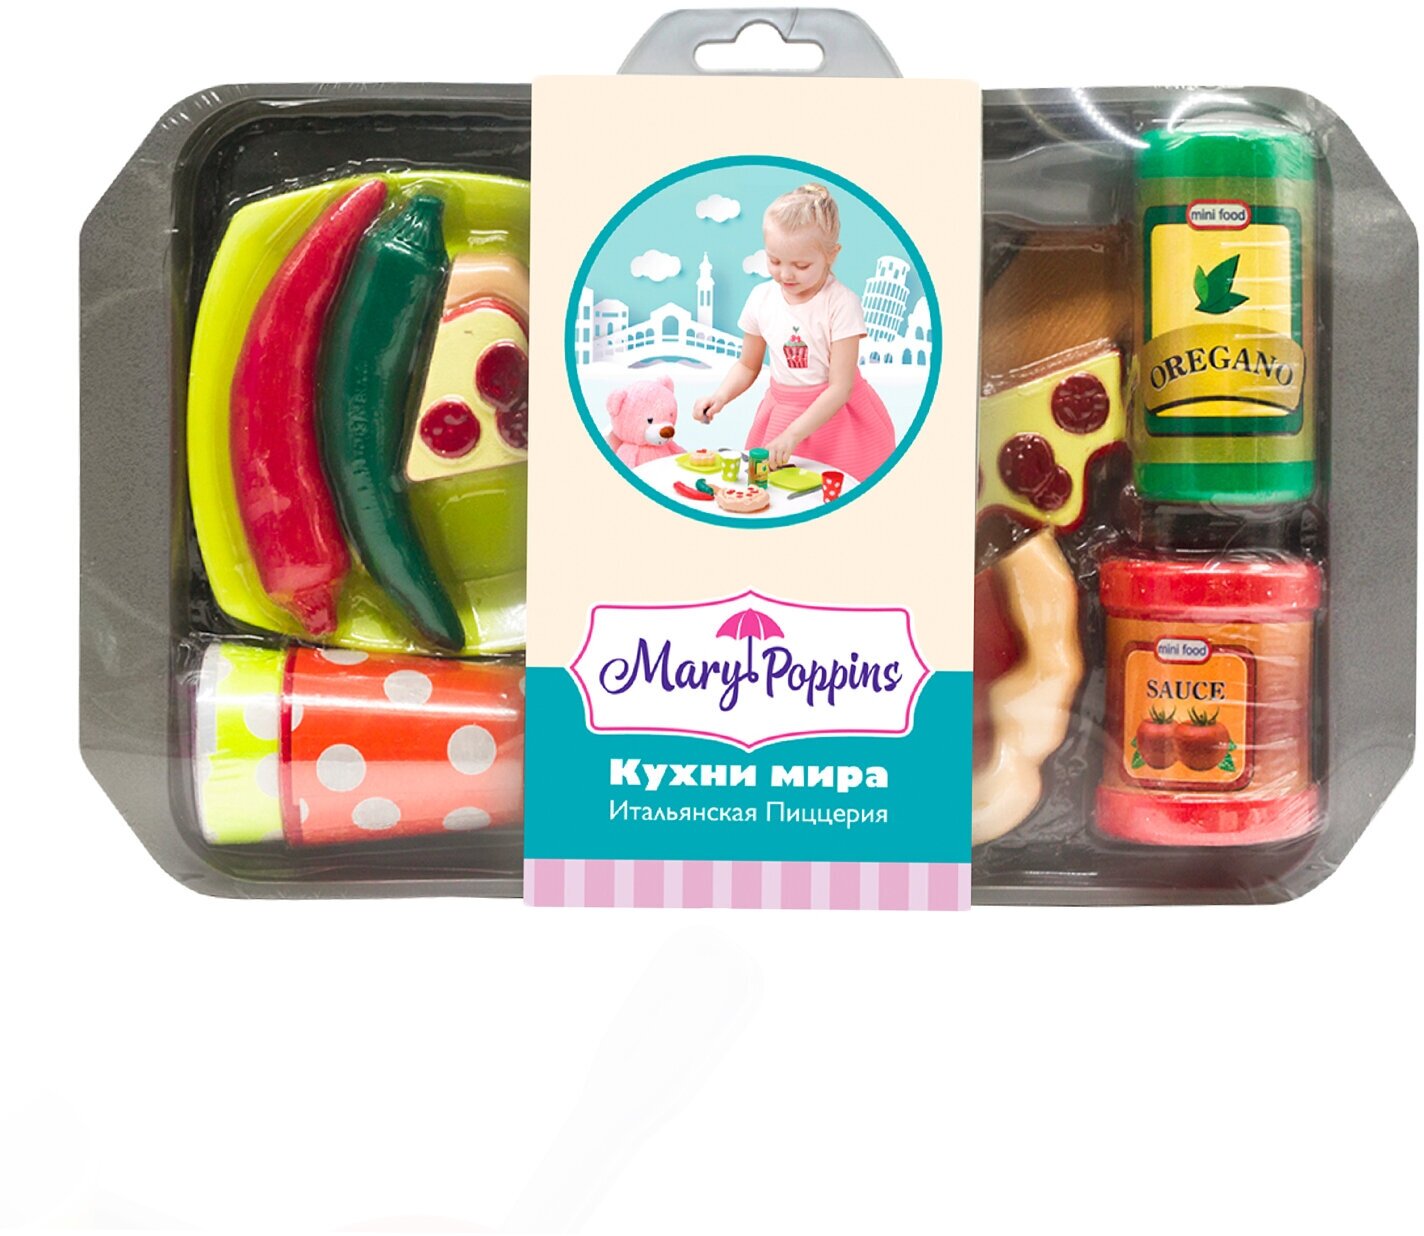 Игровой набор Mary Poppins Кухни мира Итальянская пицерия - фото №5